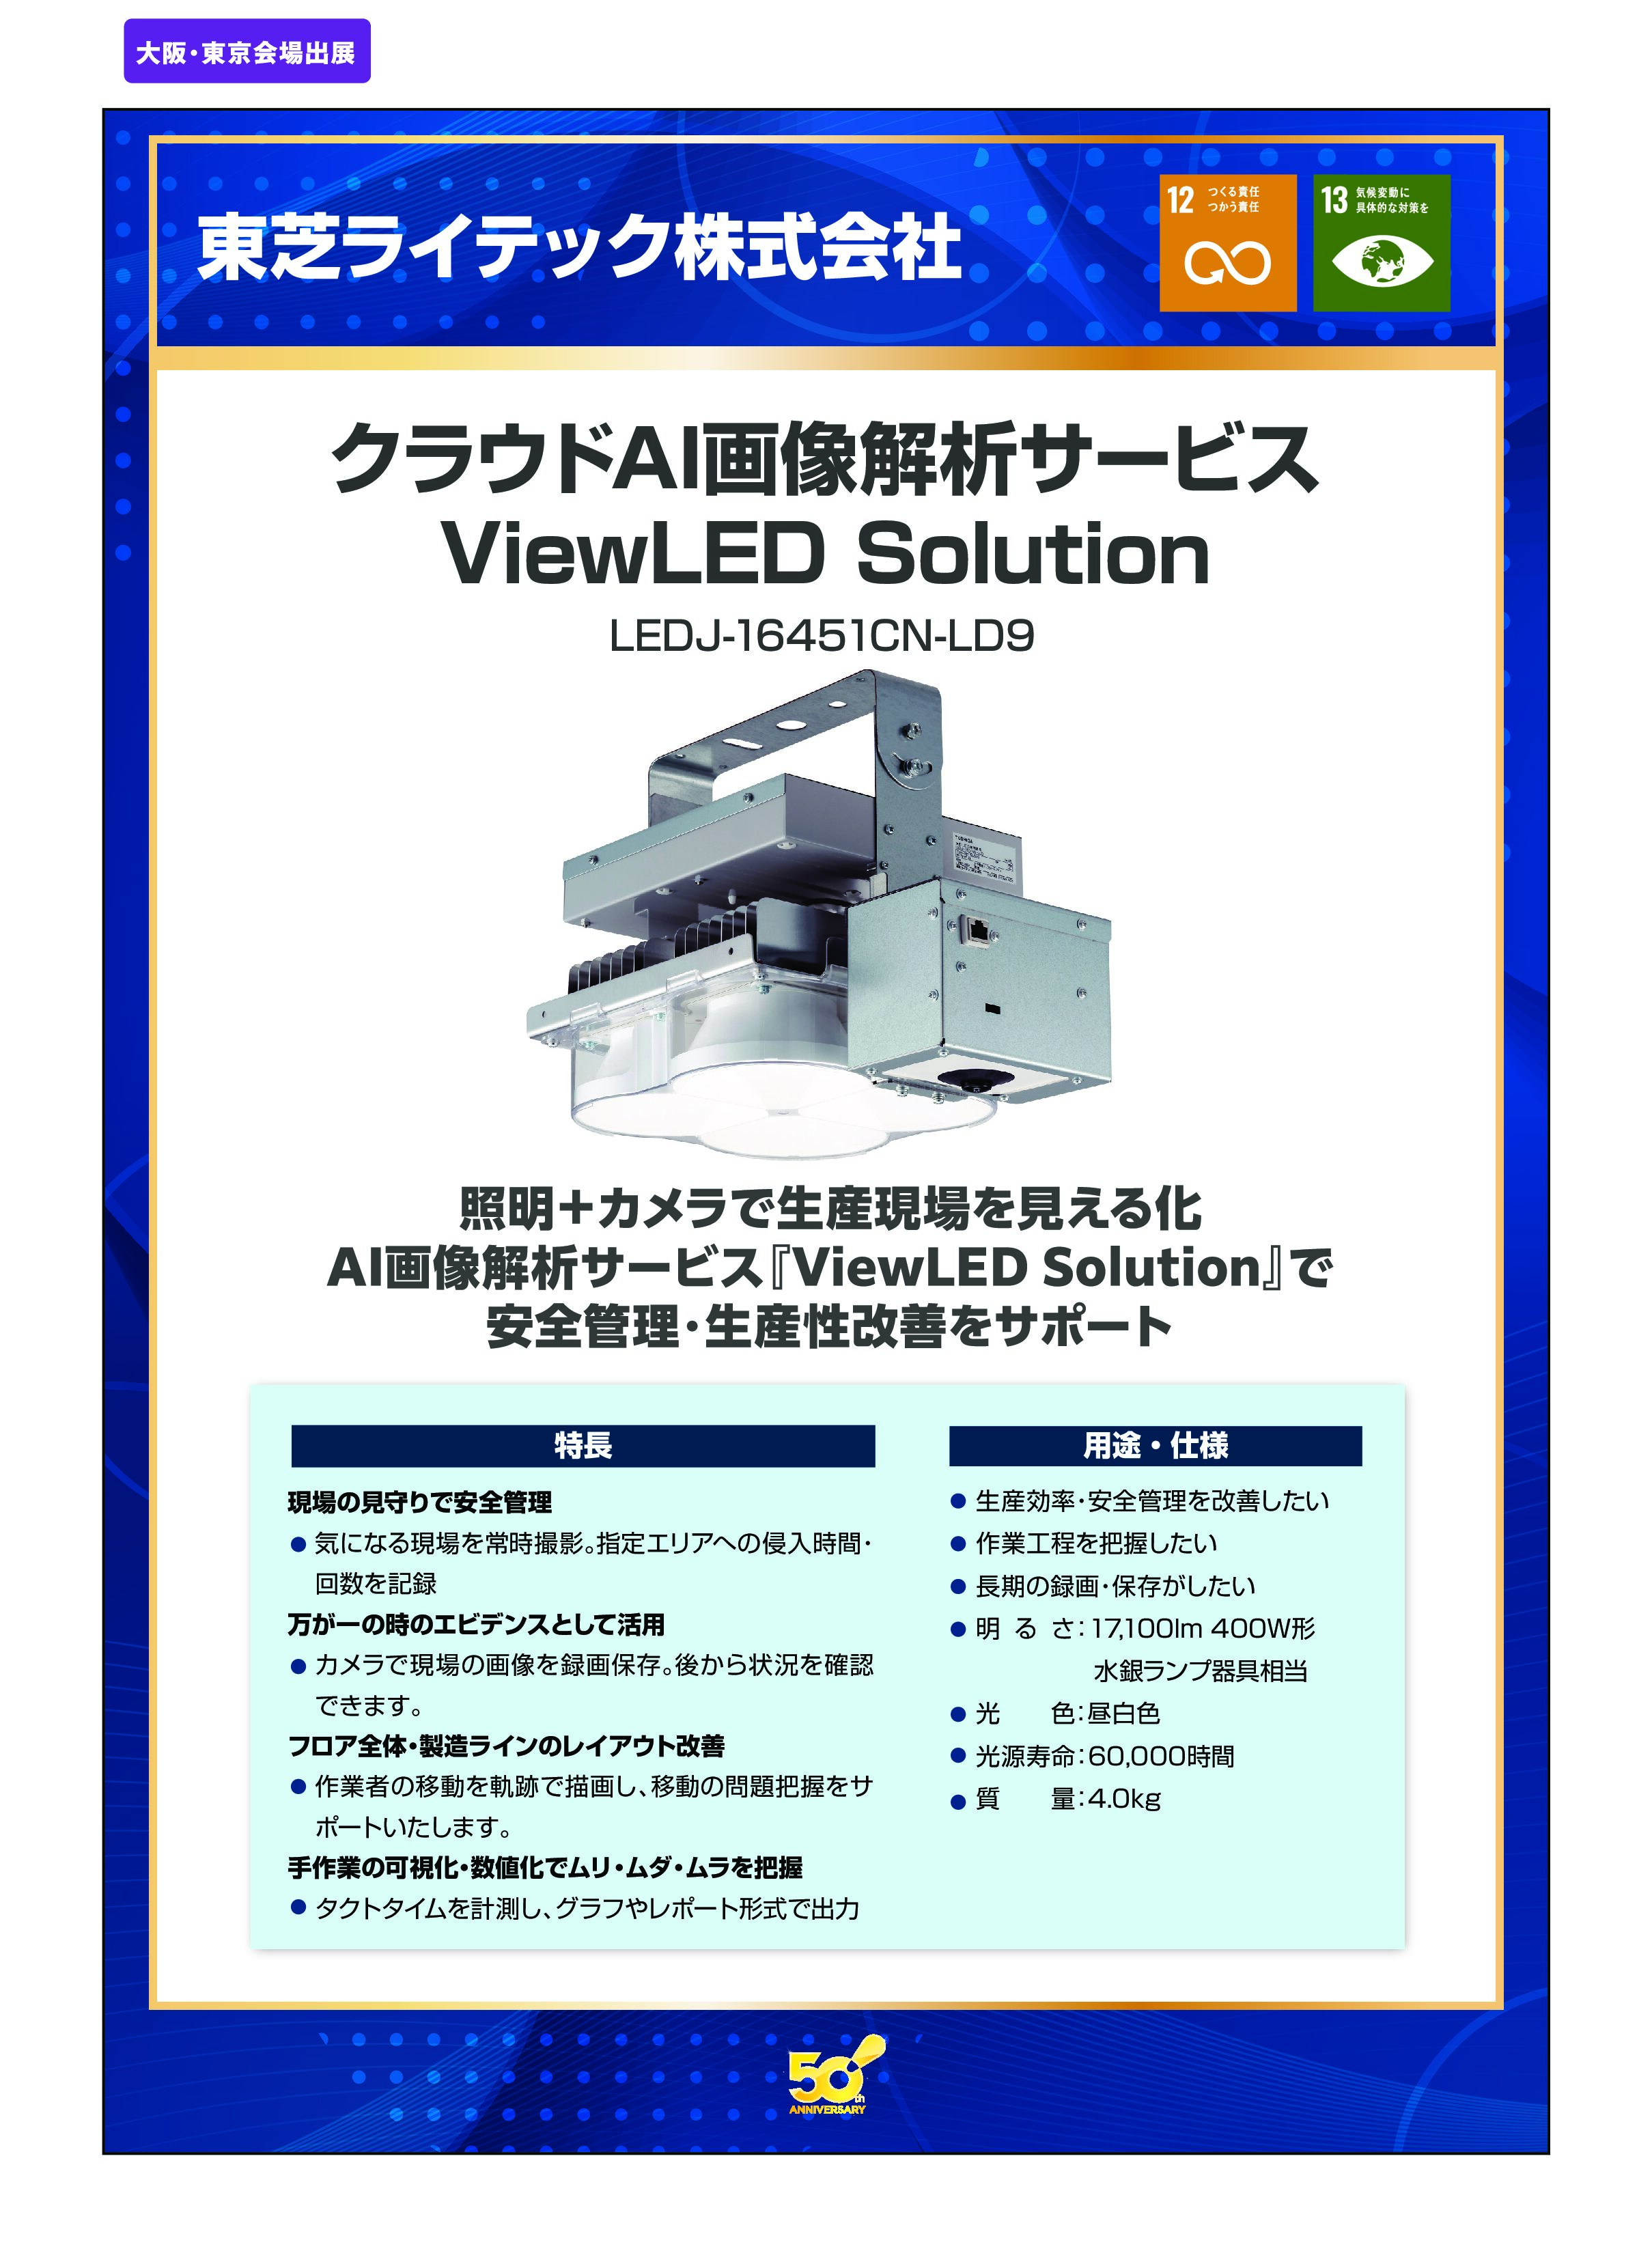 「クラウドAI画像解析サービス ViewLED Solution」東芝ライテック株式会社の画像